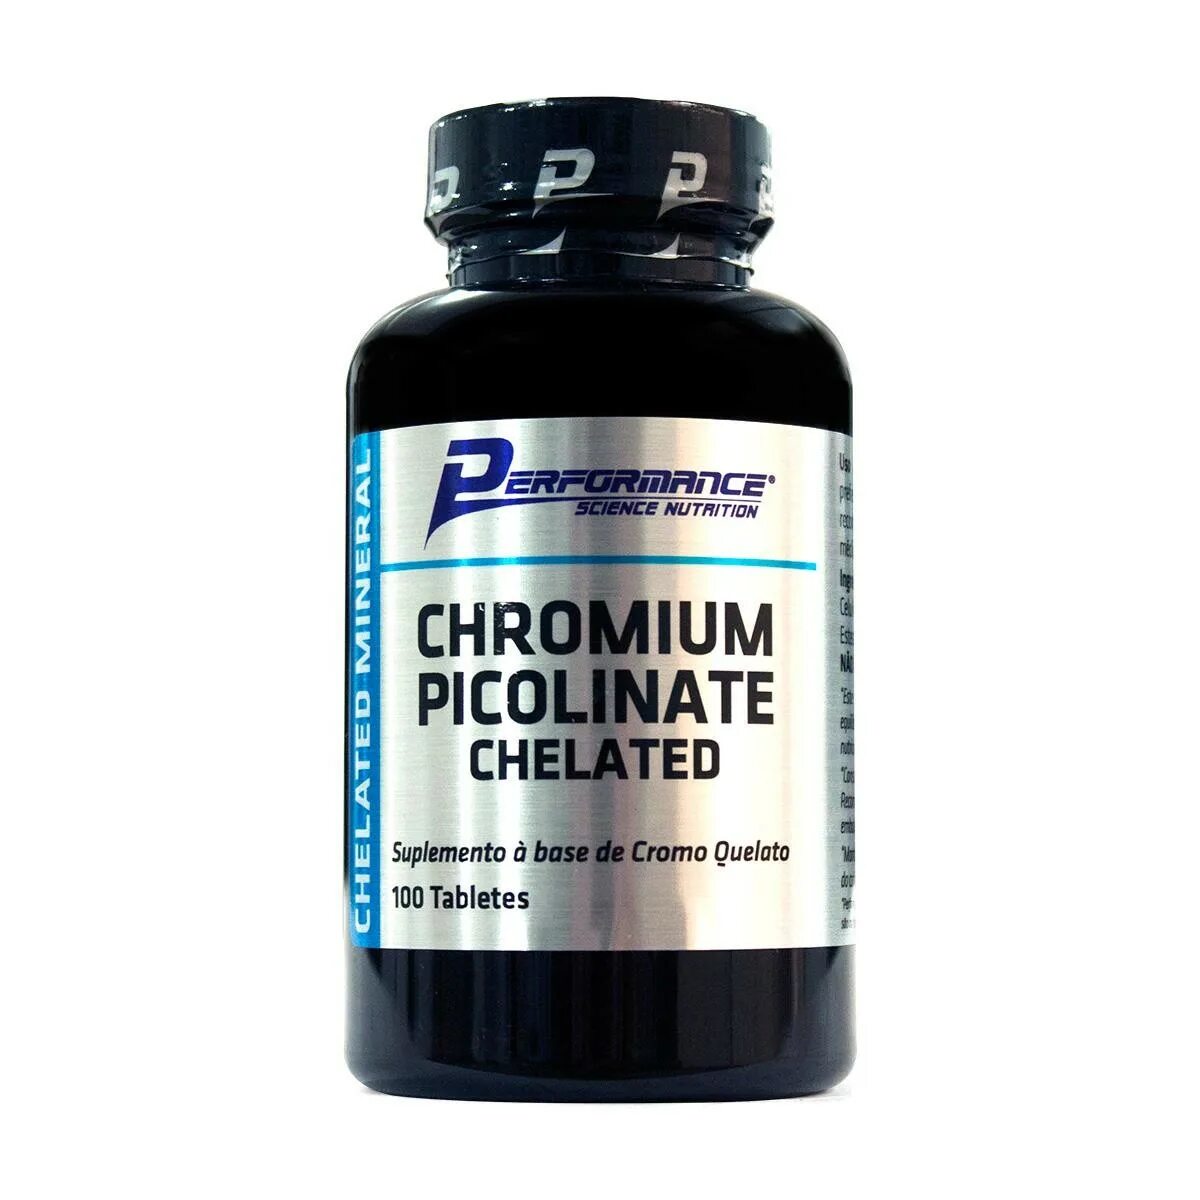 Пиколинат хрома как правильно принимать. Chromium Picolinate 250mg. Хелат хрома и пиколинат хрома. Ultimate Nutrition Chromium Picolinate (100 капс.). Аминокислотный Хелат хрома 300мг.